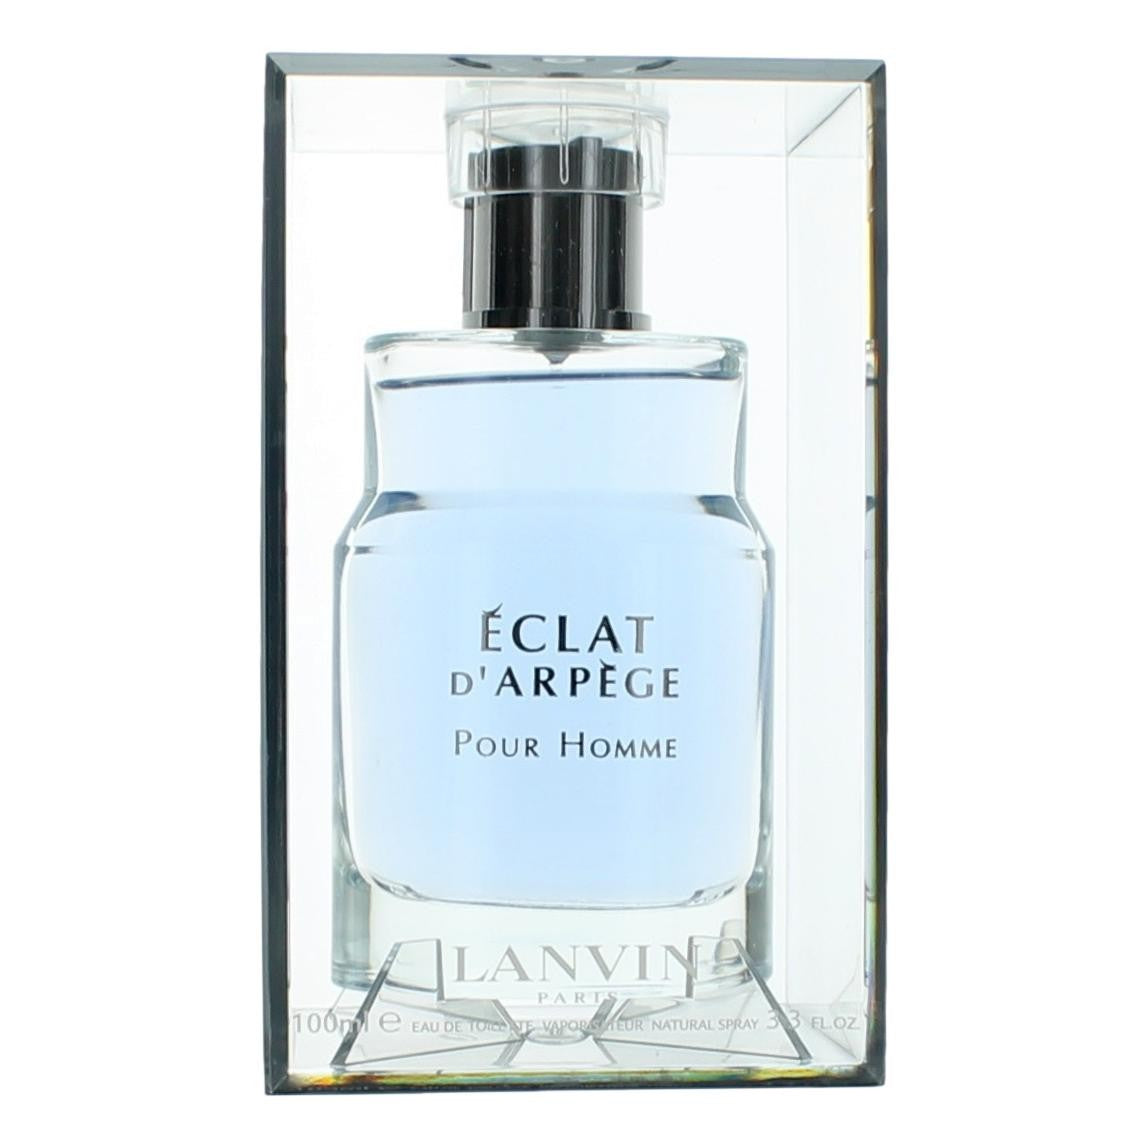 Bottle of Lanvin Eclat D'arpege, 3.3 oz Eau De Toilette Spray for Men